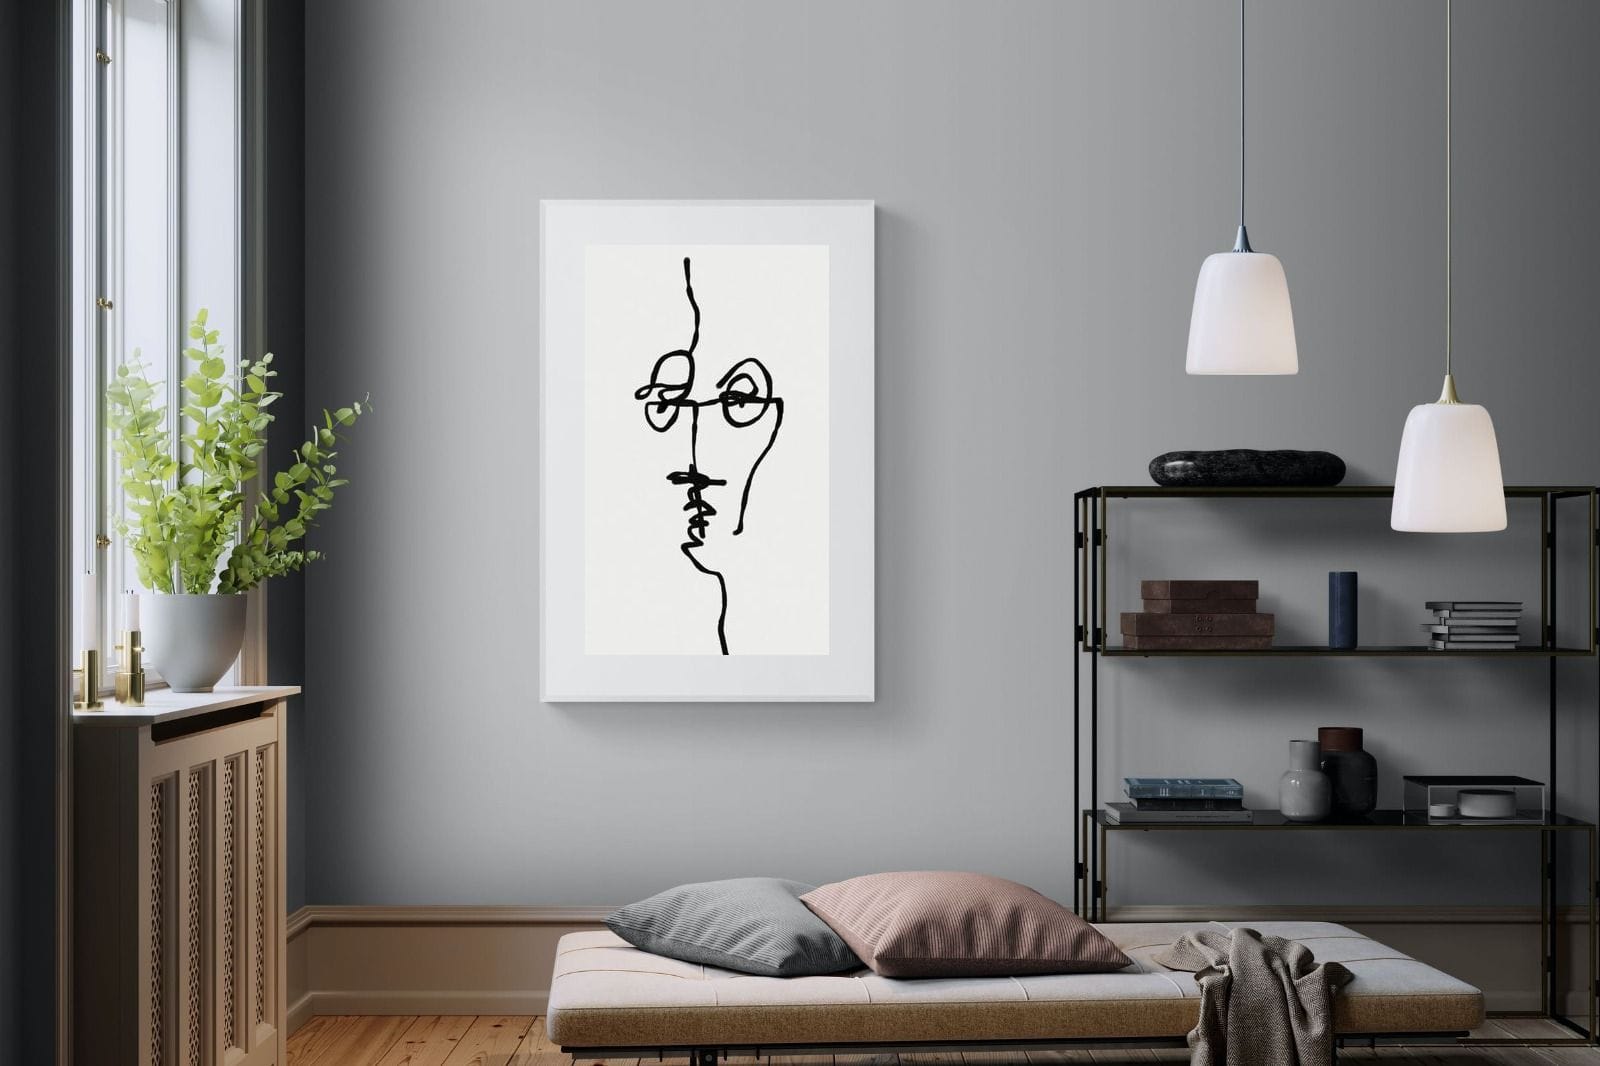 Her-Wall_Art-100 x 150cm-Framed Print-White-Pixalot